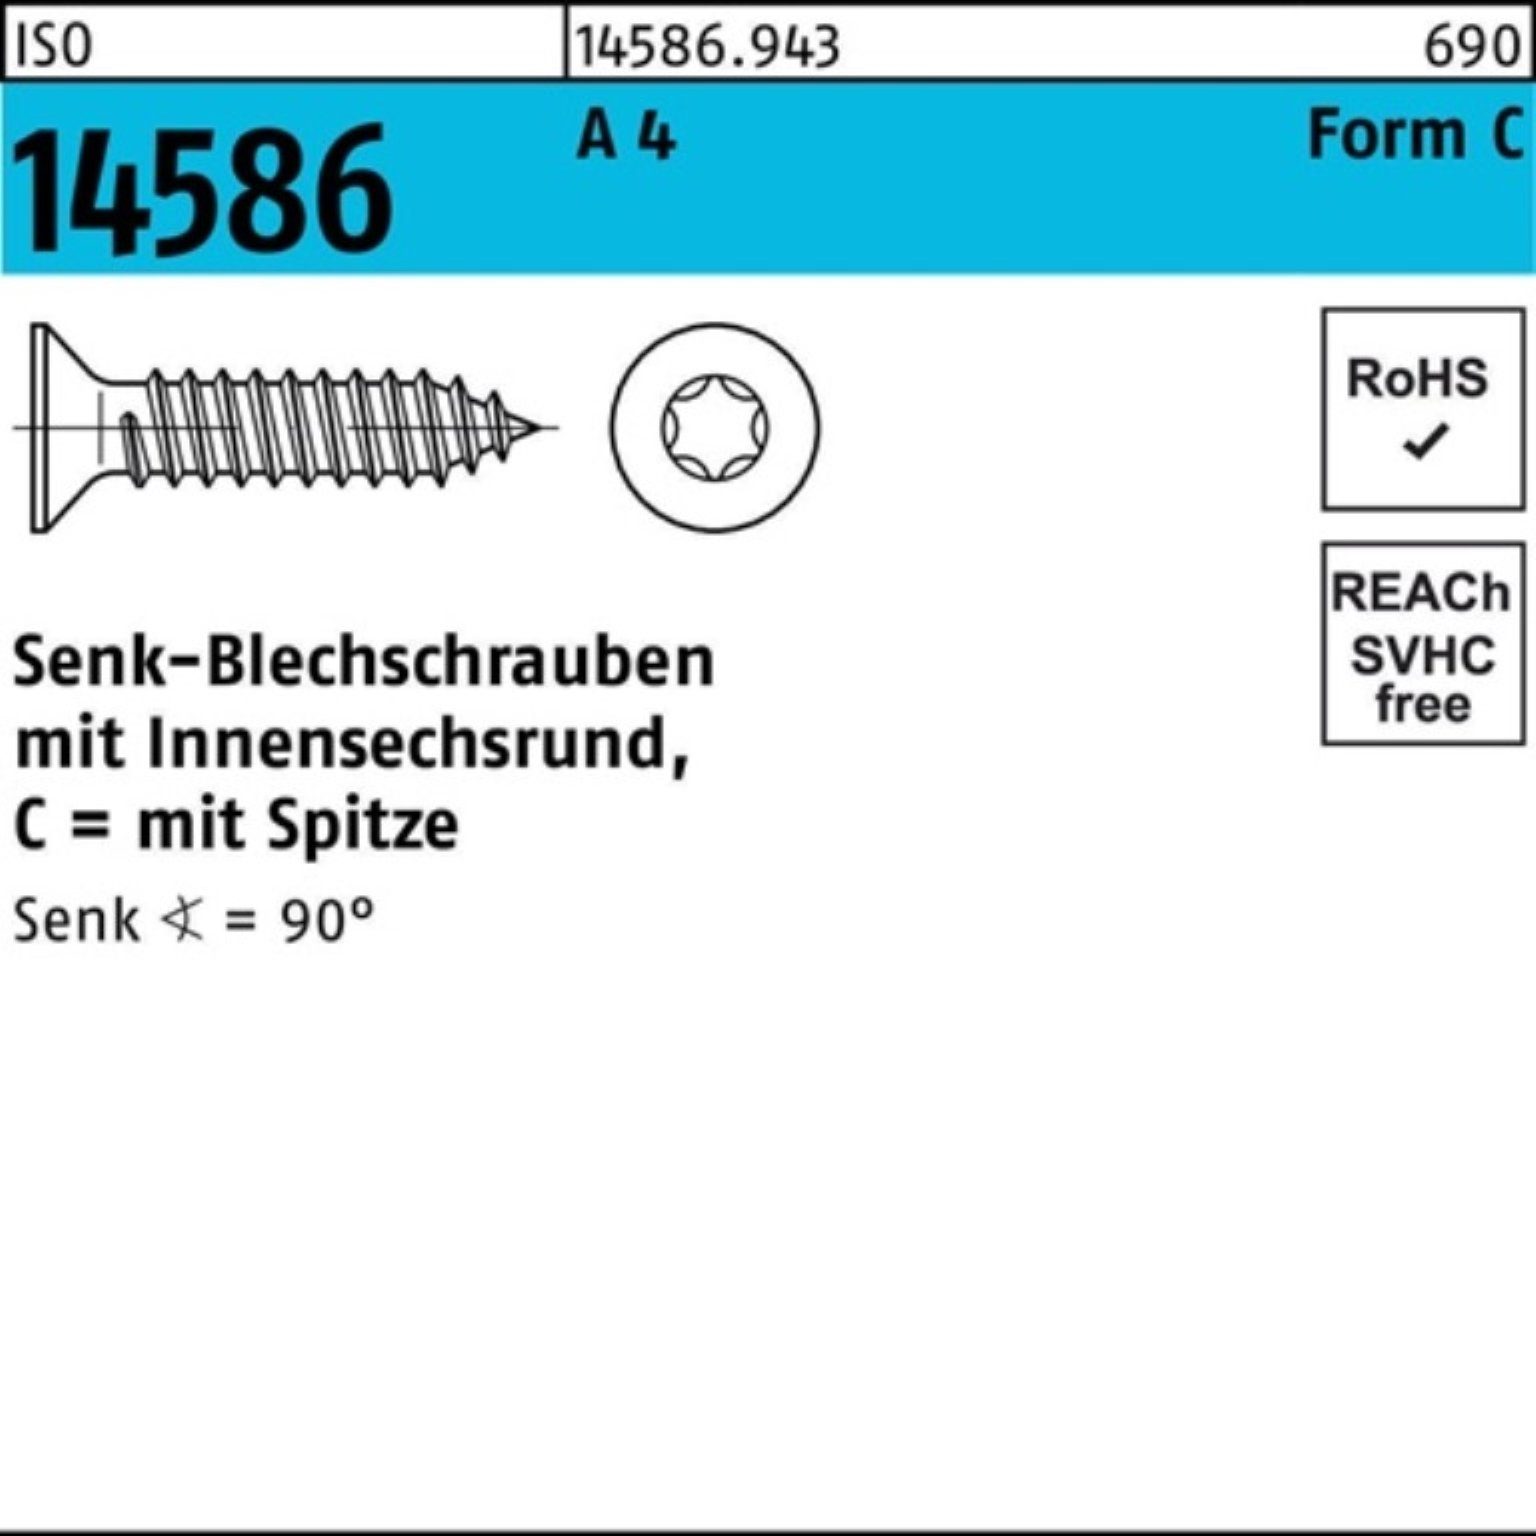 Reyher Schraube 500er Pack Senkblechschraube ISO 14586 ISR/Spitze 4,2x 45-T20 A 4 500